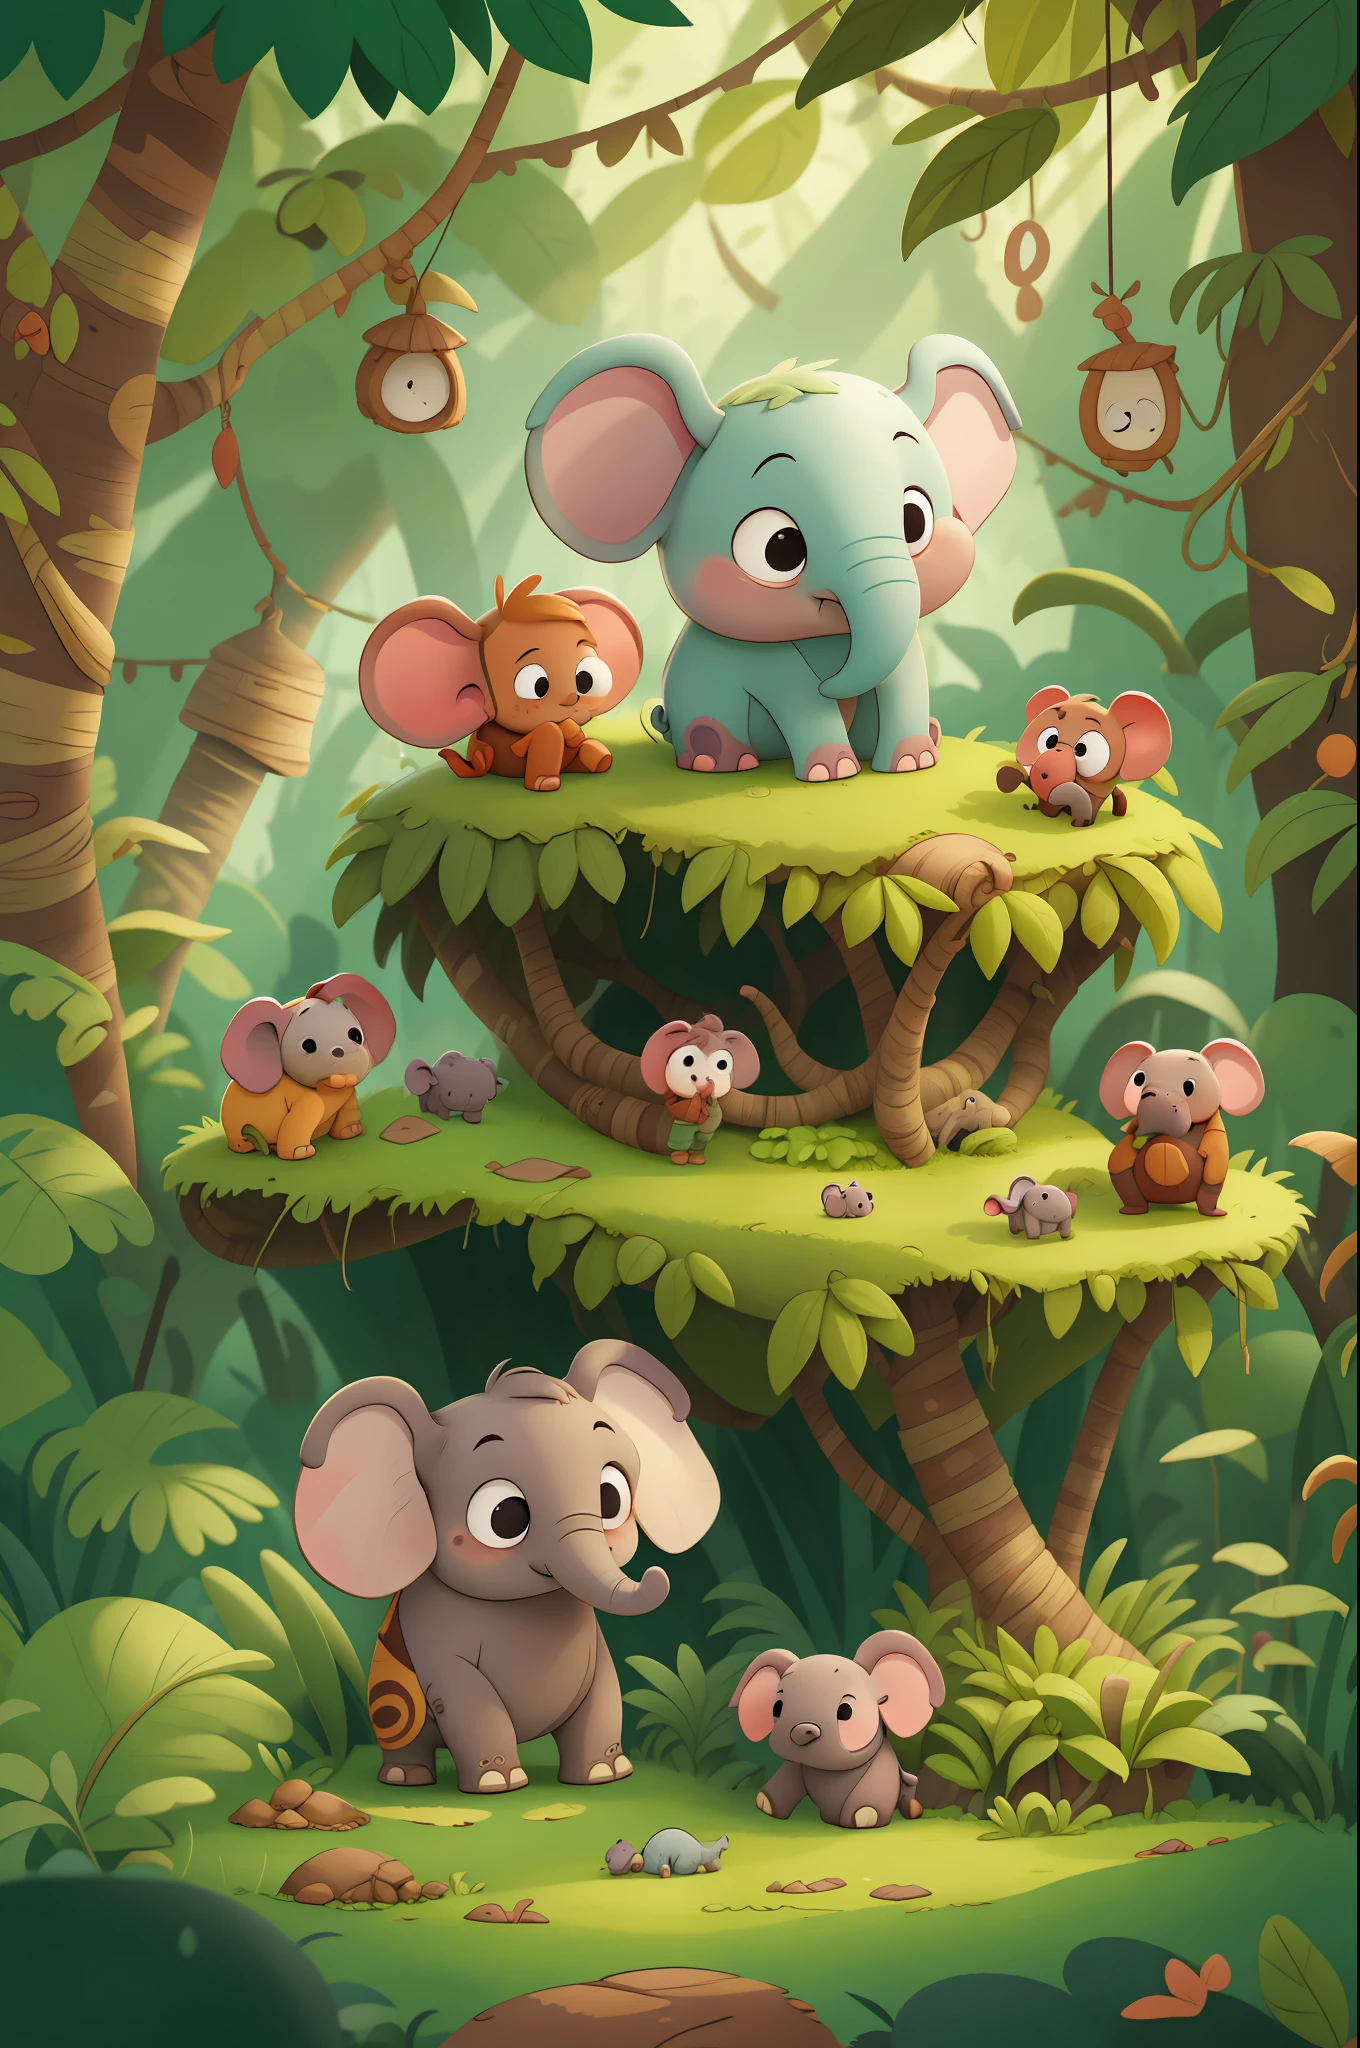 Había una vez un pequeño elefante llamado Doug que vivía en la selva con su familia.. Doug era muy curioso y le encantaba explorar el mundo que lo rodeaba.. Libro infantil, en el estilo de animación.